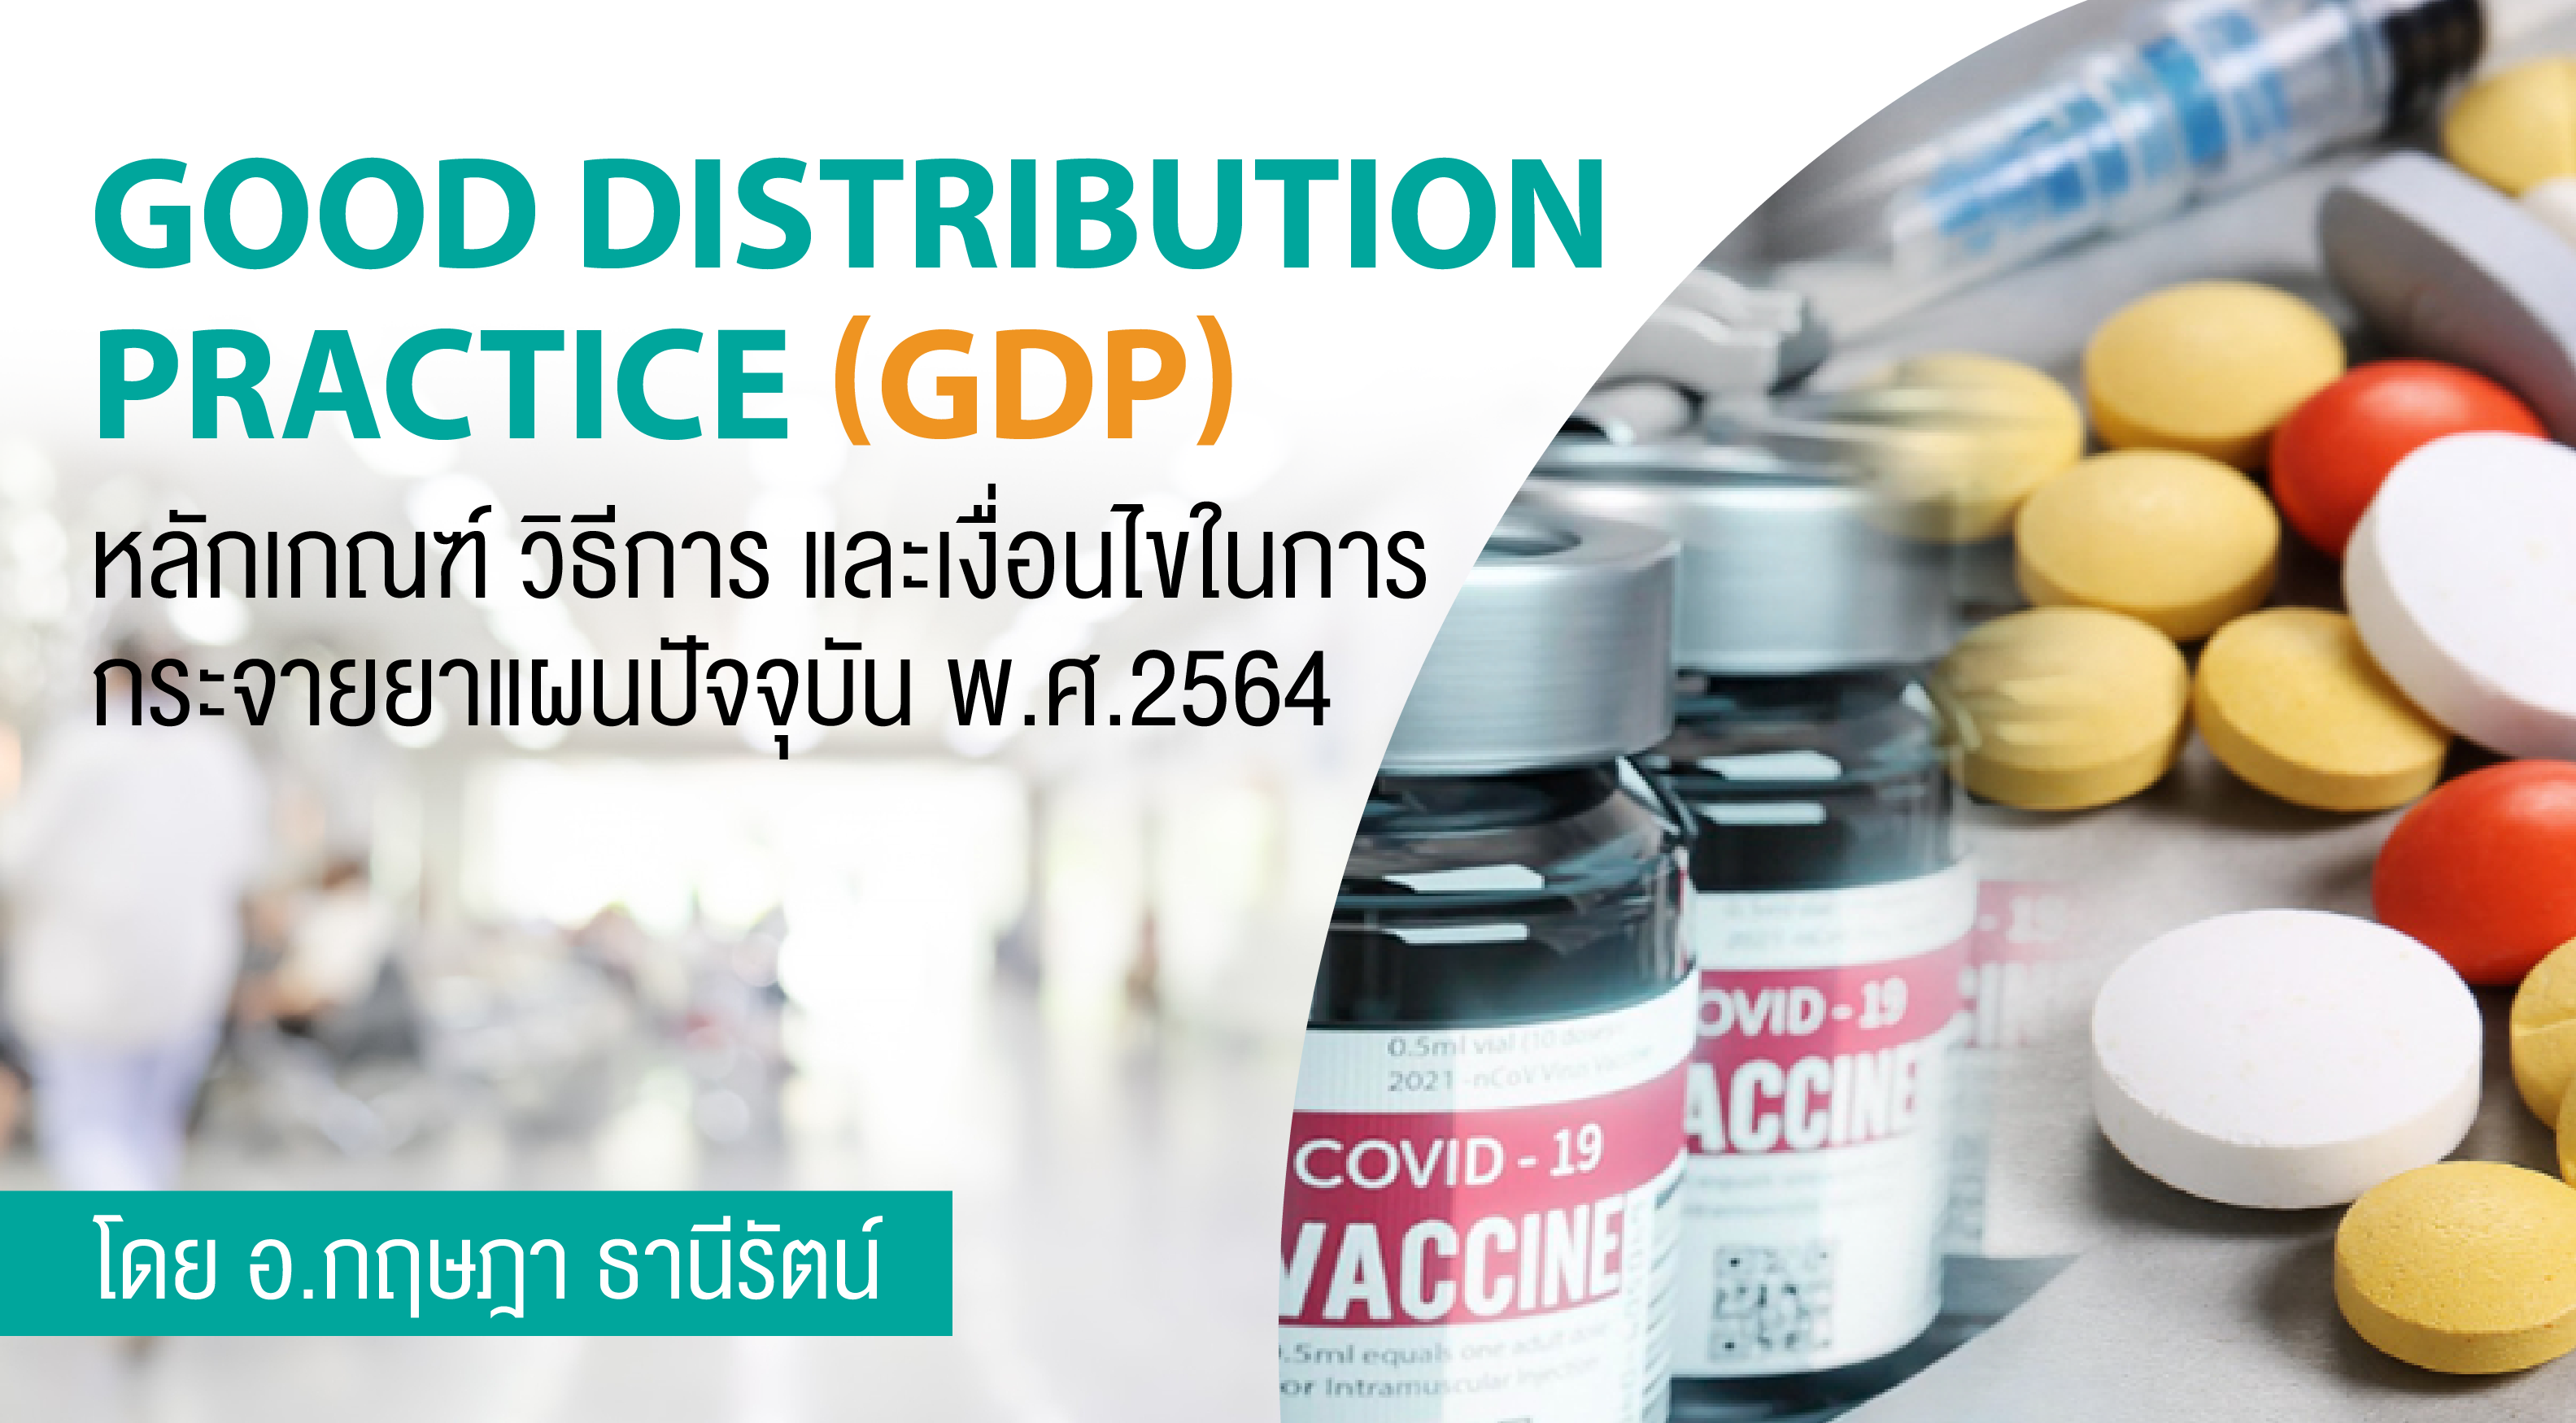 ข้อกำหนด Good Distribution Practice (GDP)